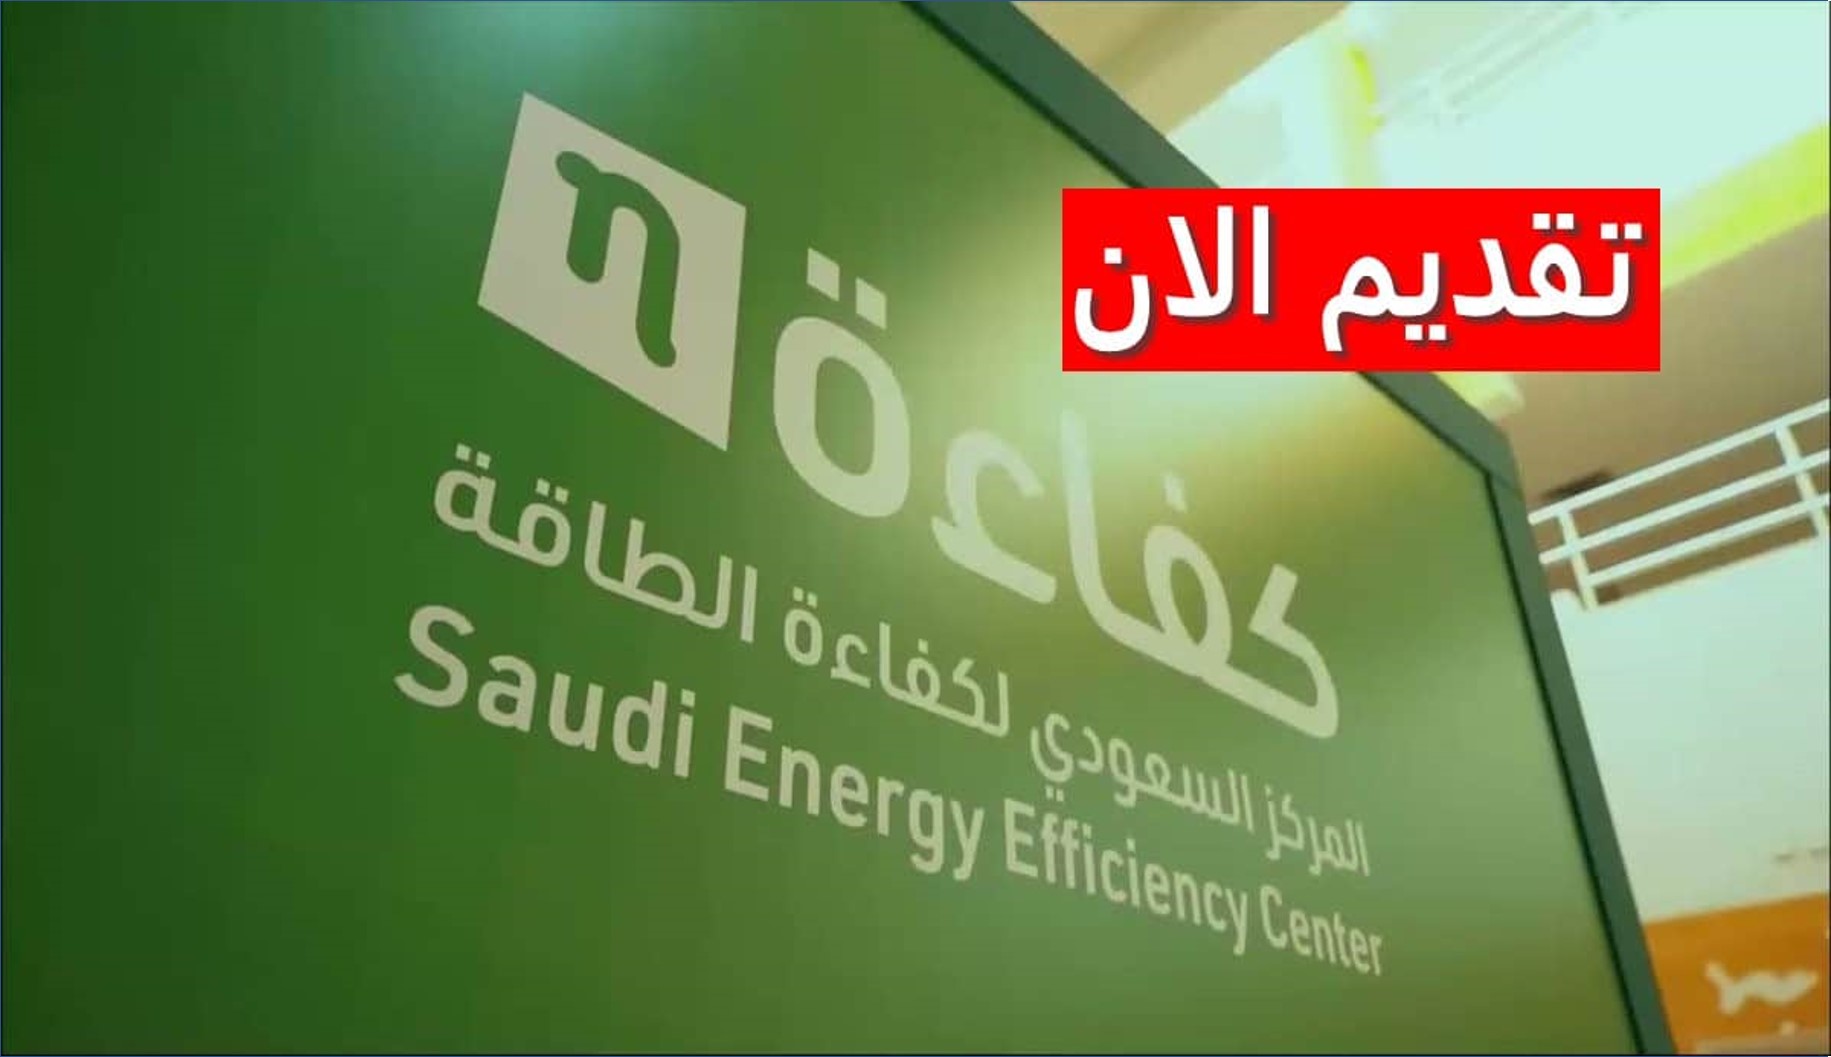 المركز السعودي لكفاءة الطاقة يعلن عن فرص عمل جديدة